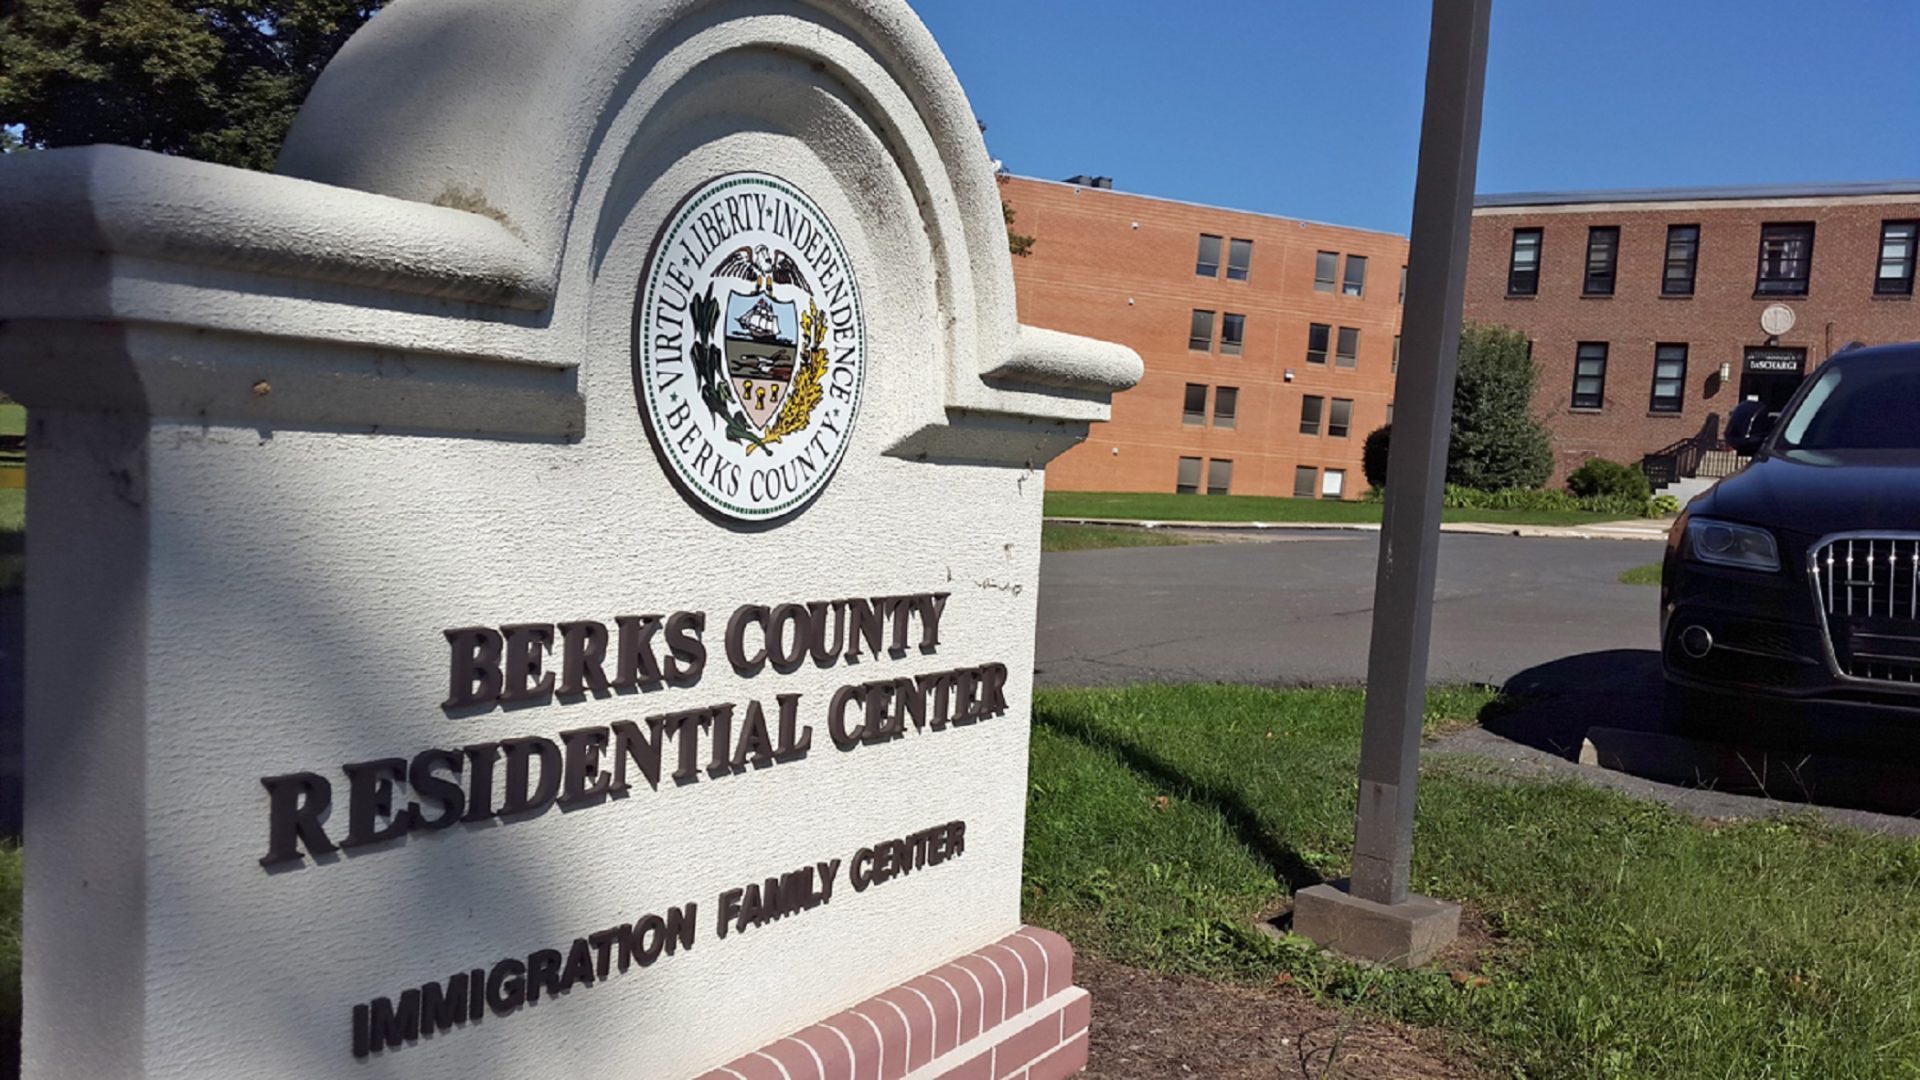 Berks County Residential Center. (Laura Benshoff/WHYY)